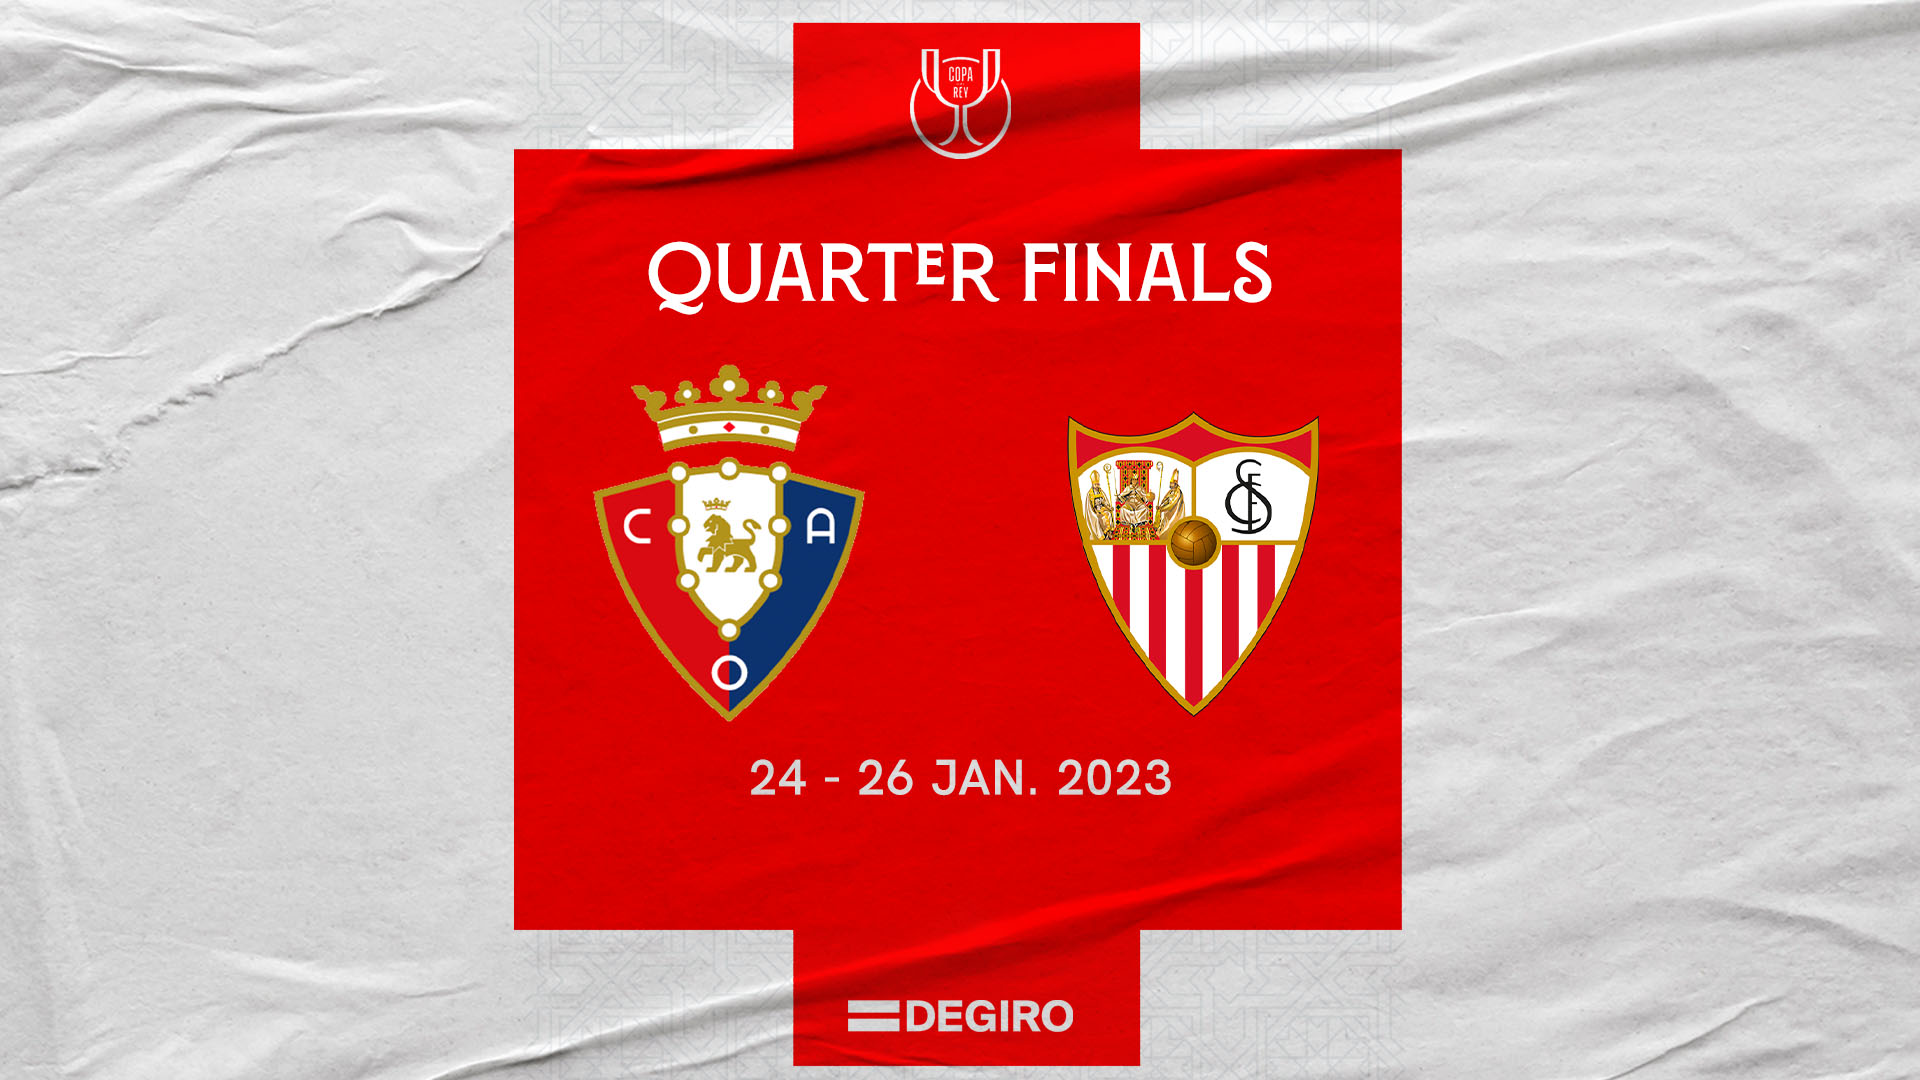 Osasuna-Sevilla in the quarter final of the Copa del Rey 